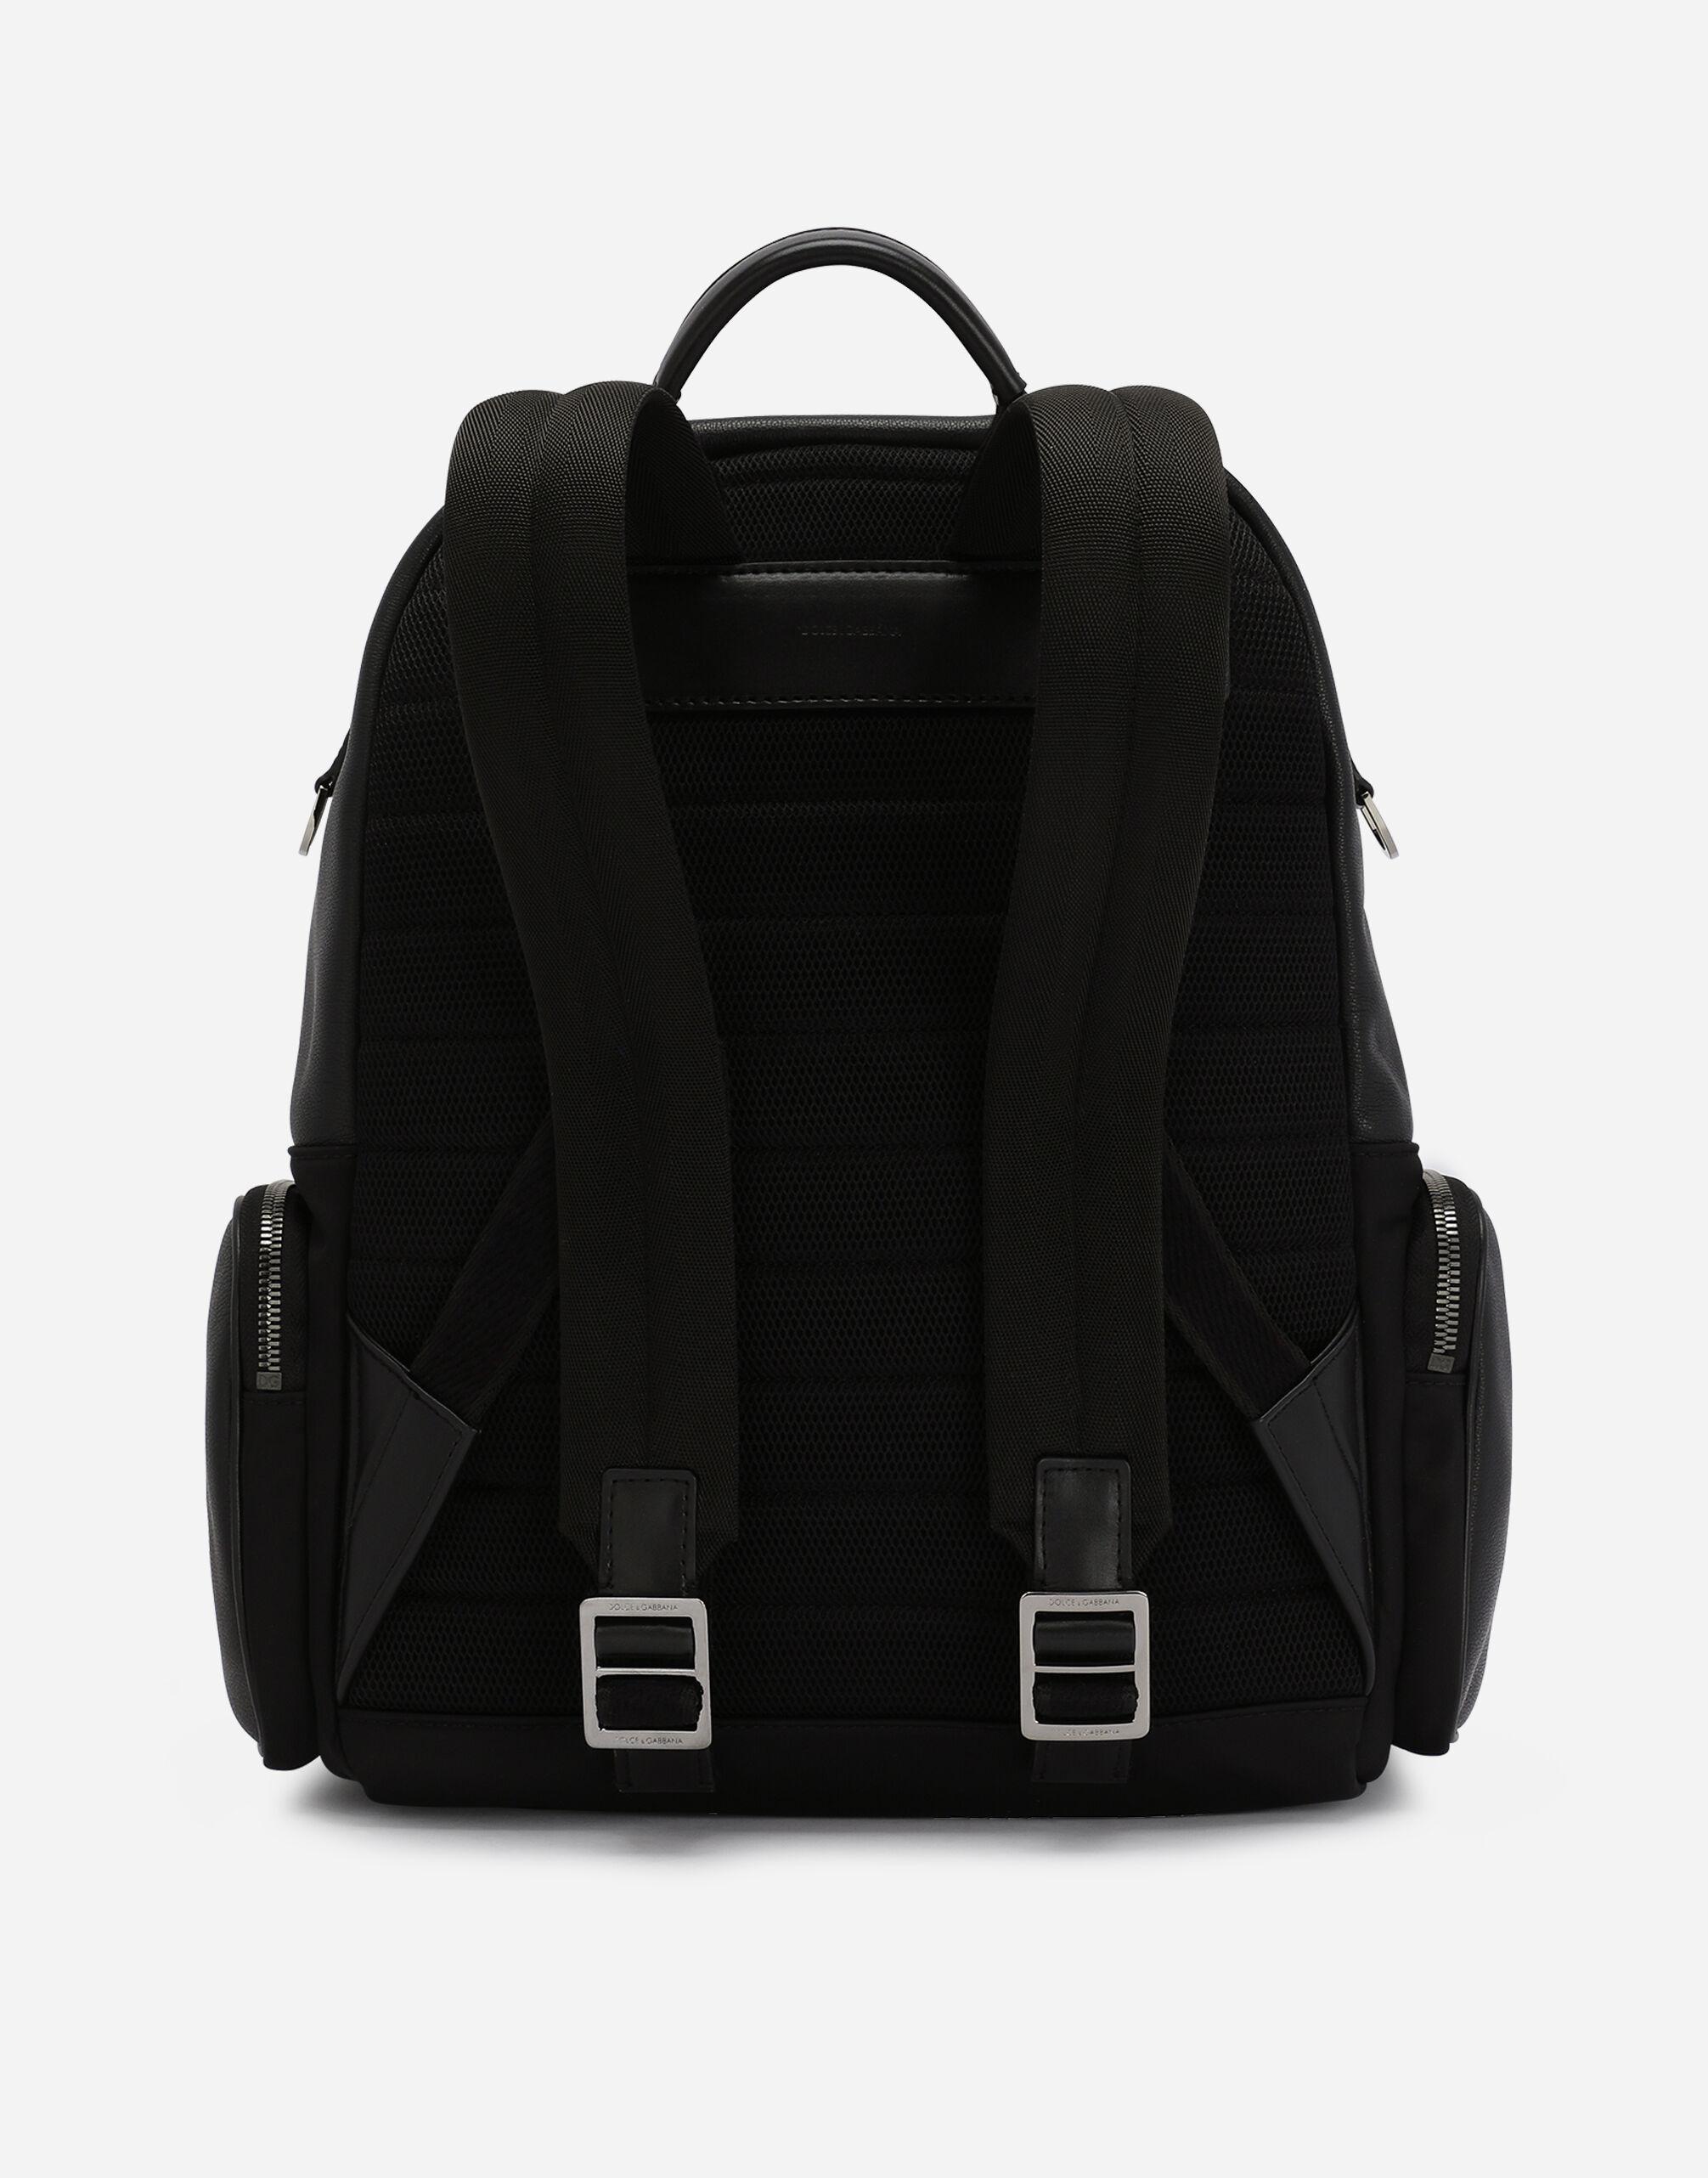 Dolce & Gabbana Nylon And Grainy Calfskin Backpack in Black for Men | Lyst